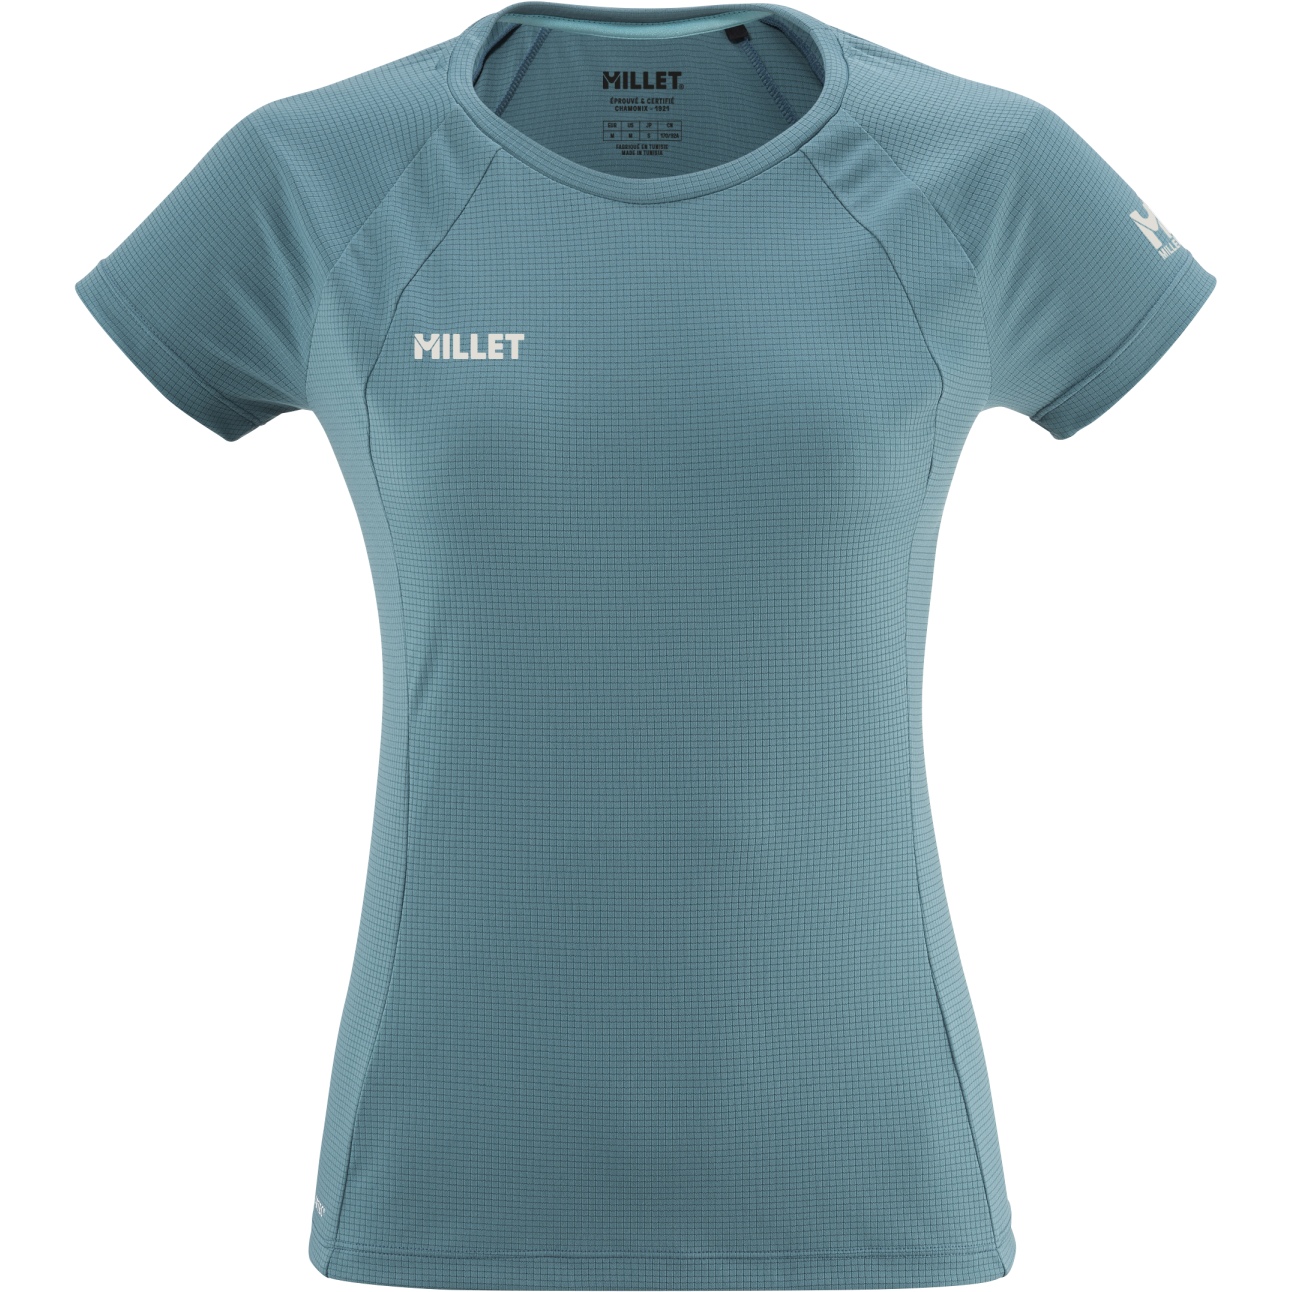 Produktbild von Millet Fusion T-Shirt Damen - Hydro